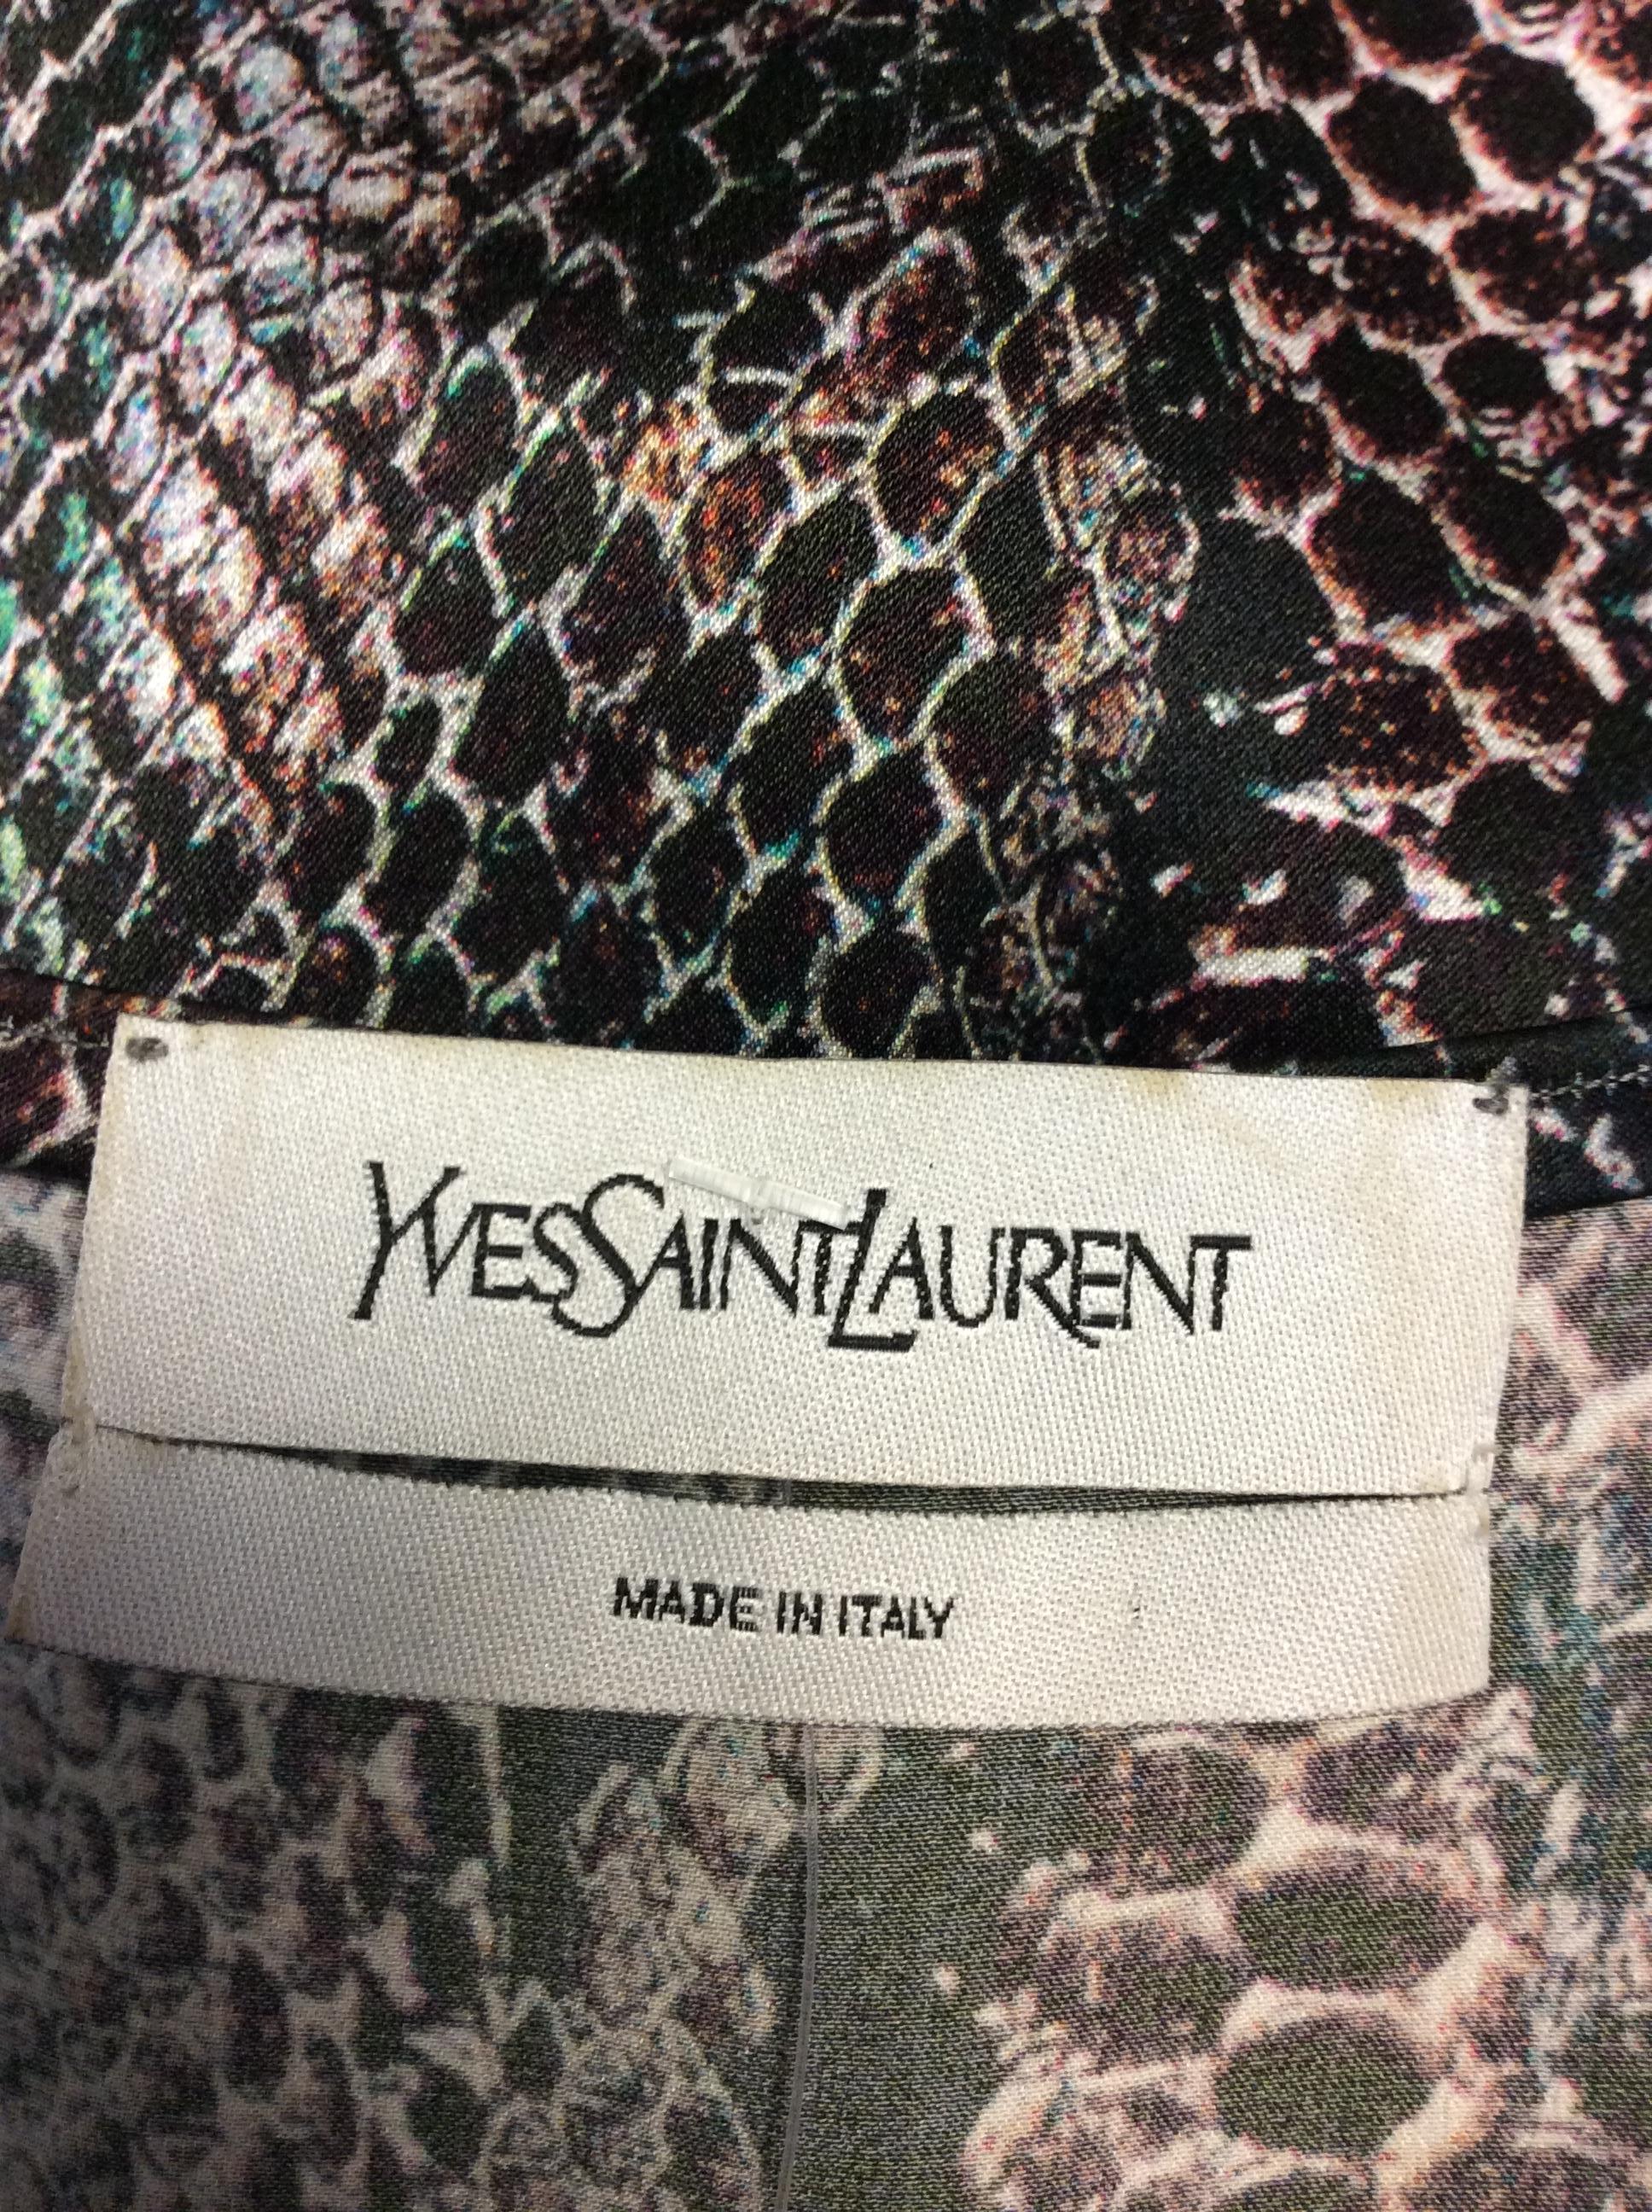 Yves Saint Laurent Snake Skin Print Silk Blouse For Sale 1